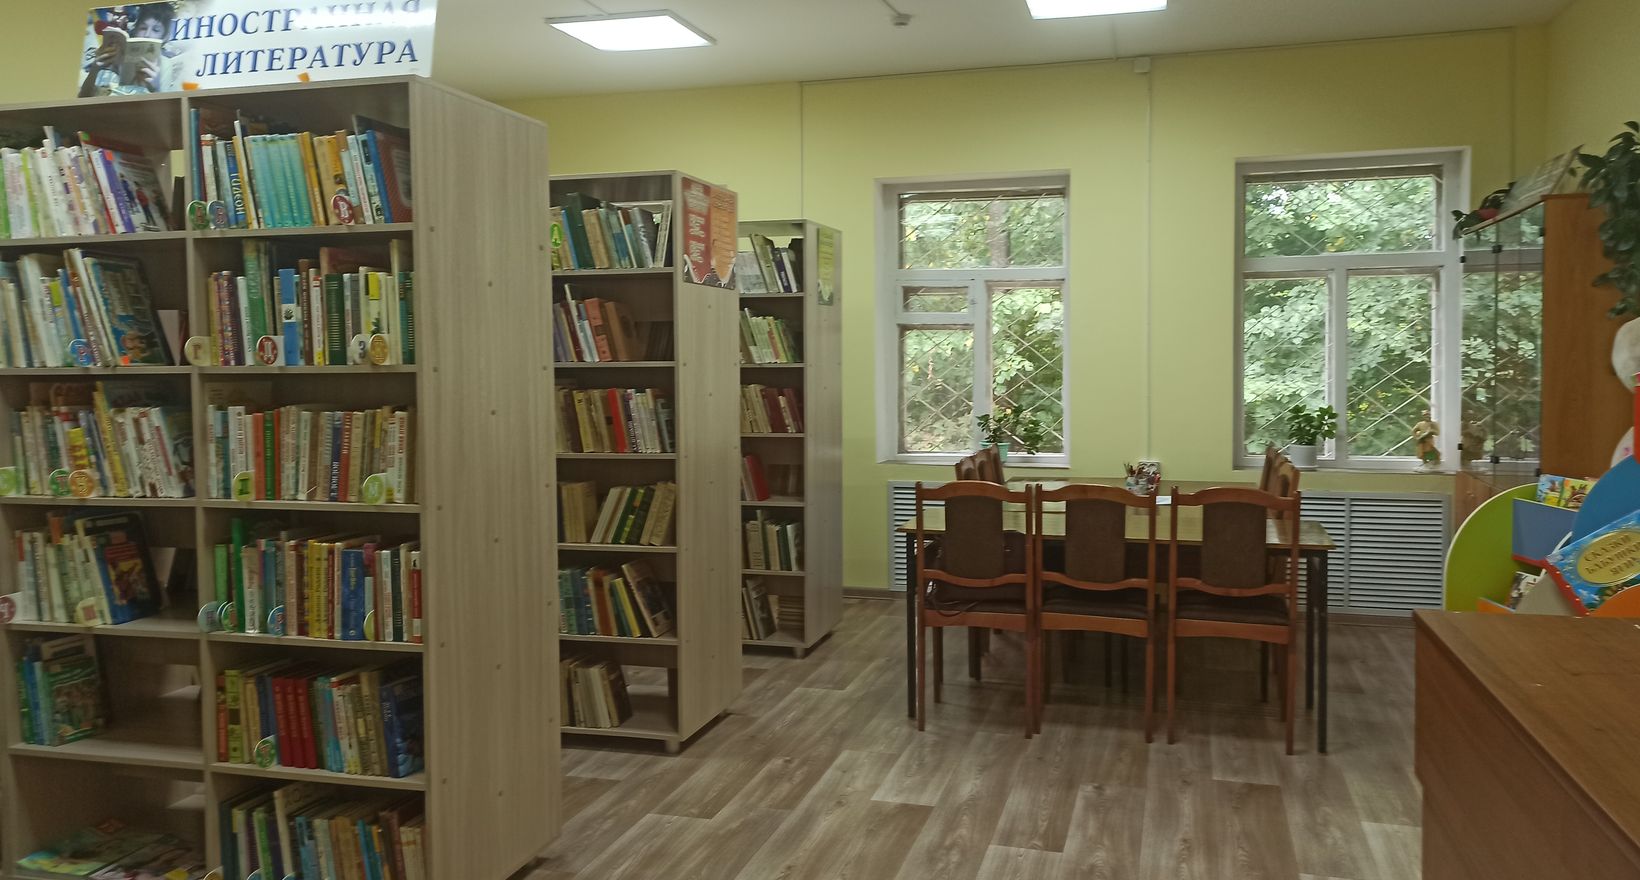 Ишлейская сельская библиотека